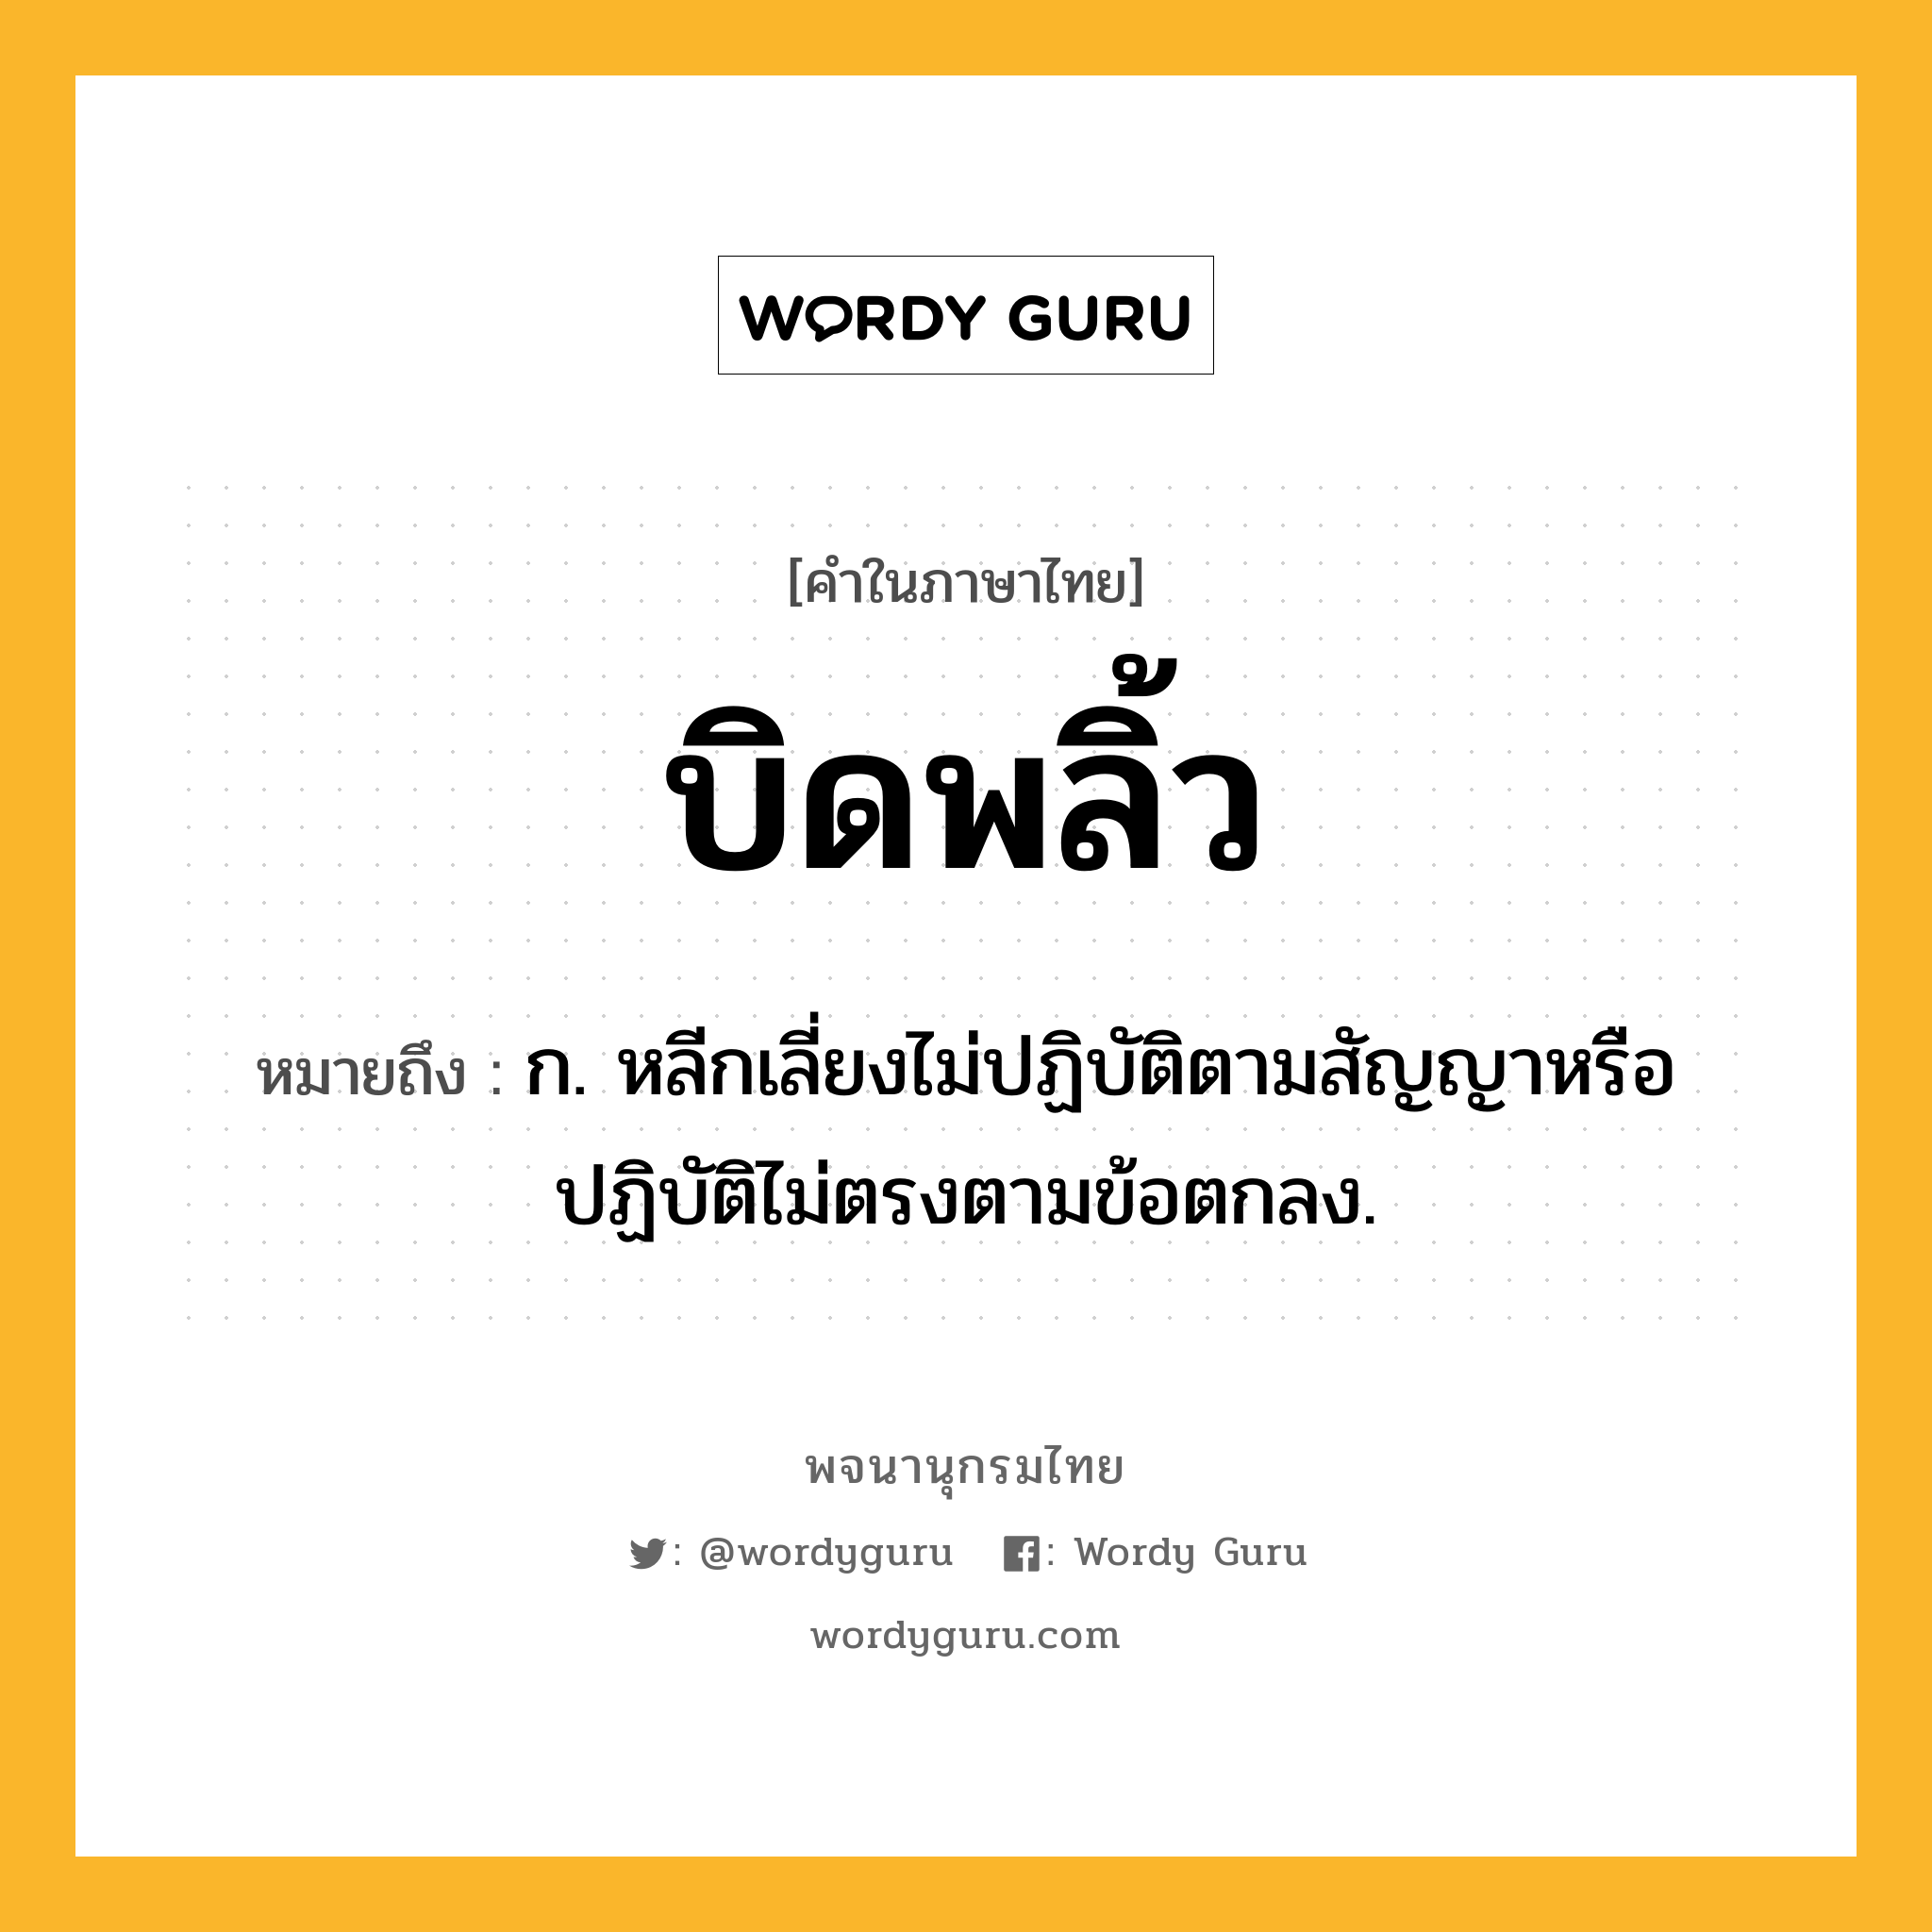 บิดพลิ้ว หมายถึงอะไร?, คำในภาษาไทย บิดพลิ้ว หมายถึง ก. หลีกเลี่ยงไม่ปฏิบัติตามสัญญาหรือปฏิบัติไม่ตรงตามข้อตกลง.